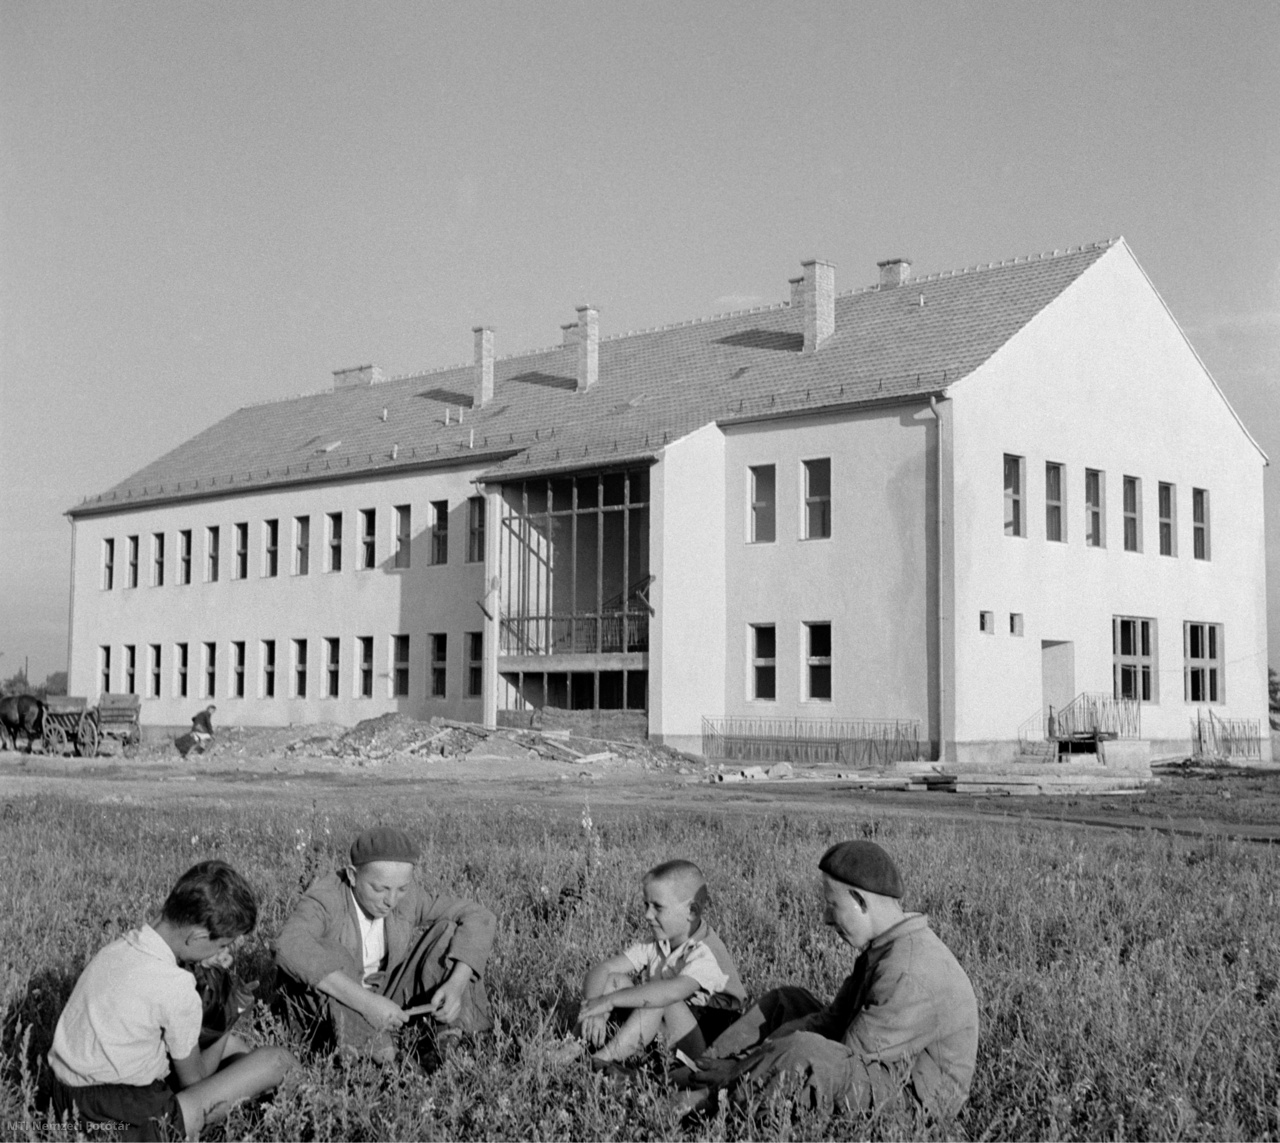 Besnyő, 1960. augusztus 17. Diákok beszélgetnek az épülő, új, nyolc tantermes iskola előtt, amelyet szeptember elején adnak át